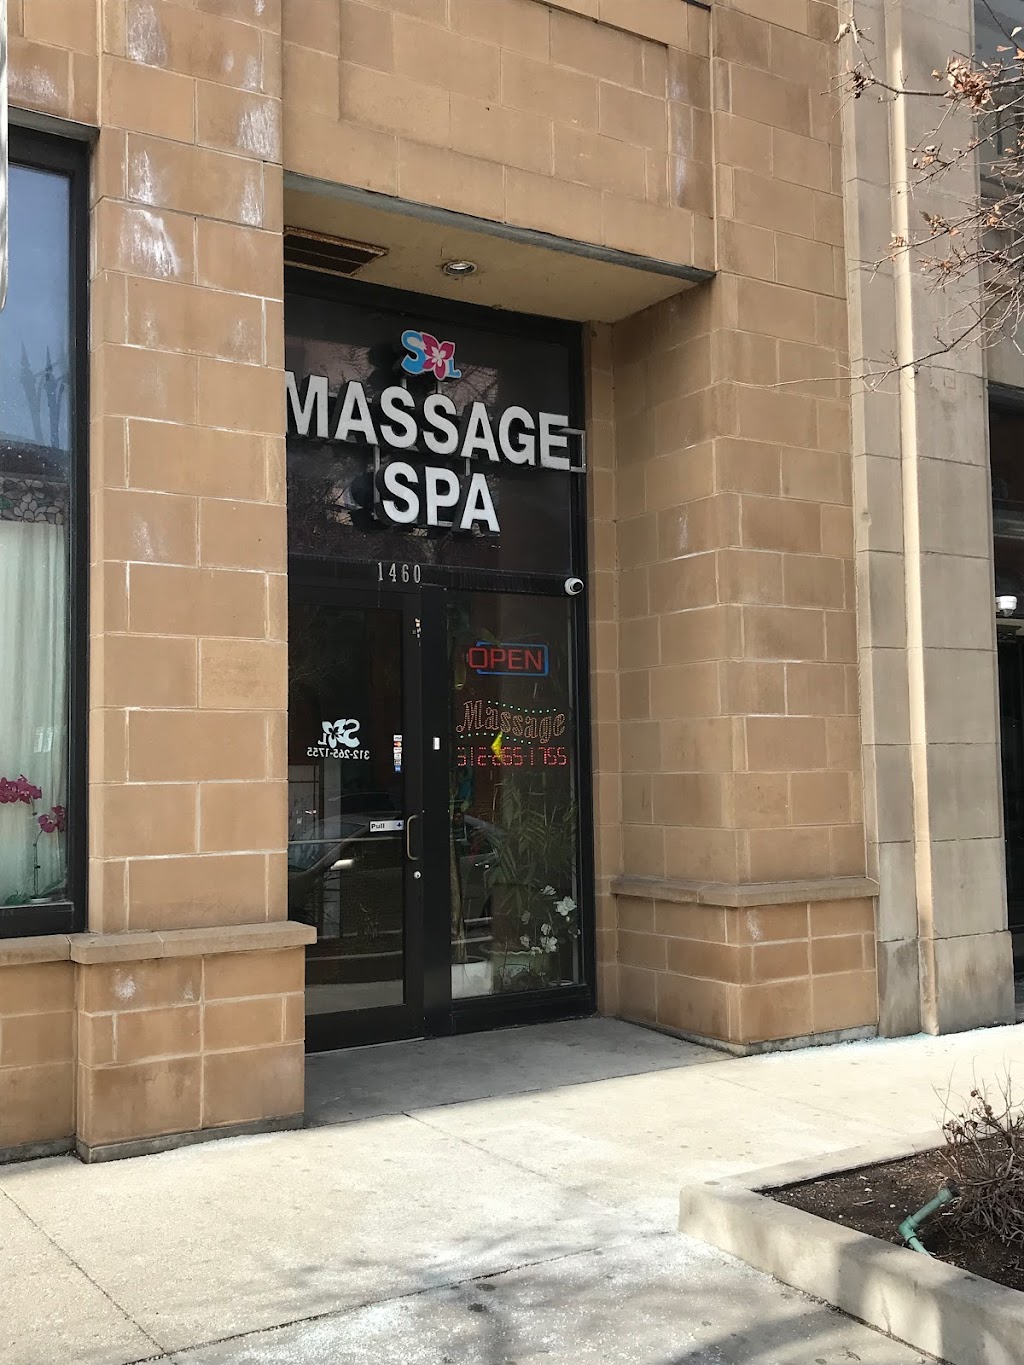 SXL Nails & Massage Spa | 1460 S Michigan Ave, Chicago, IL 60605 | Phone: (312) 265-1755